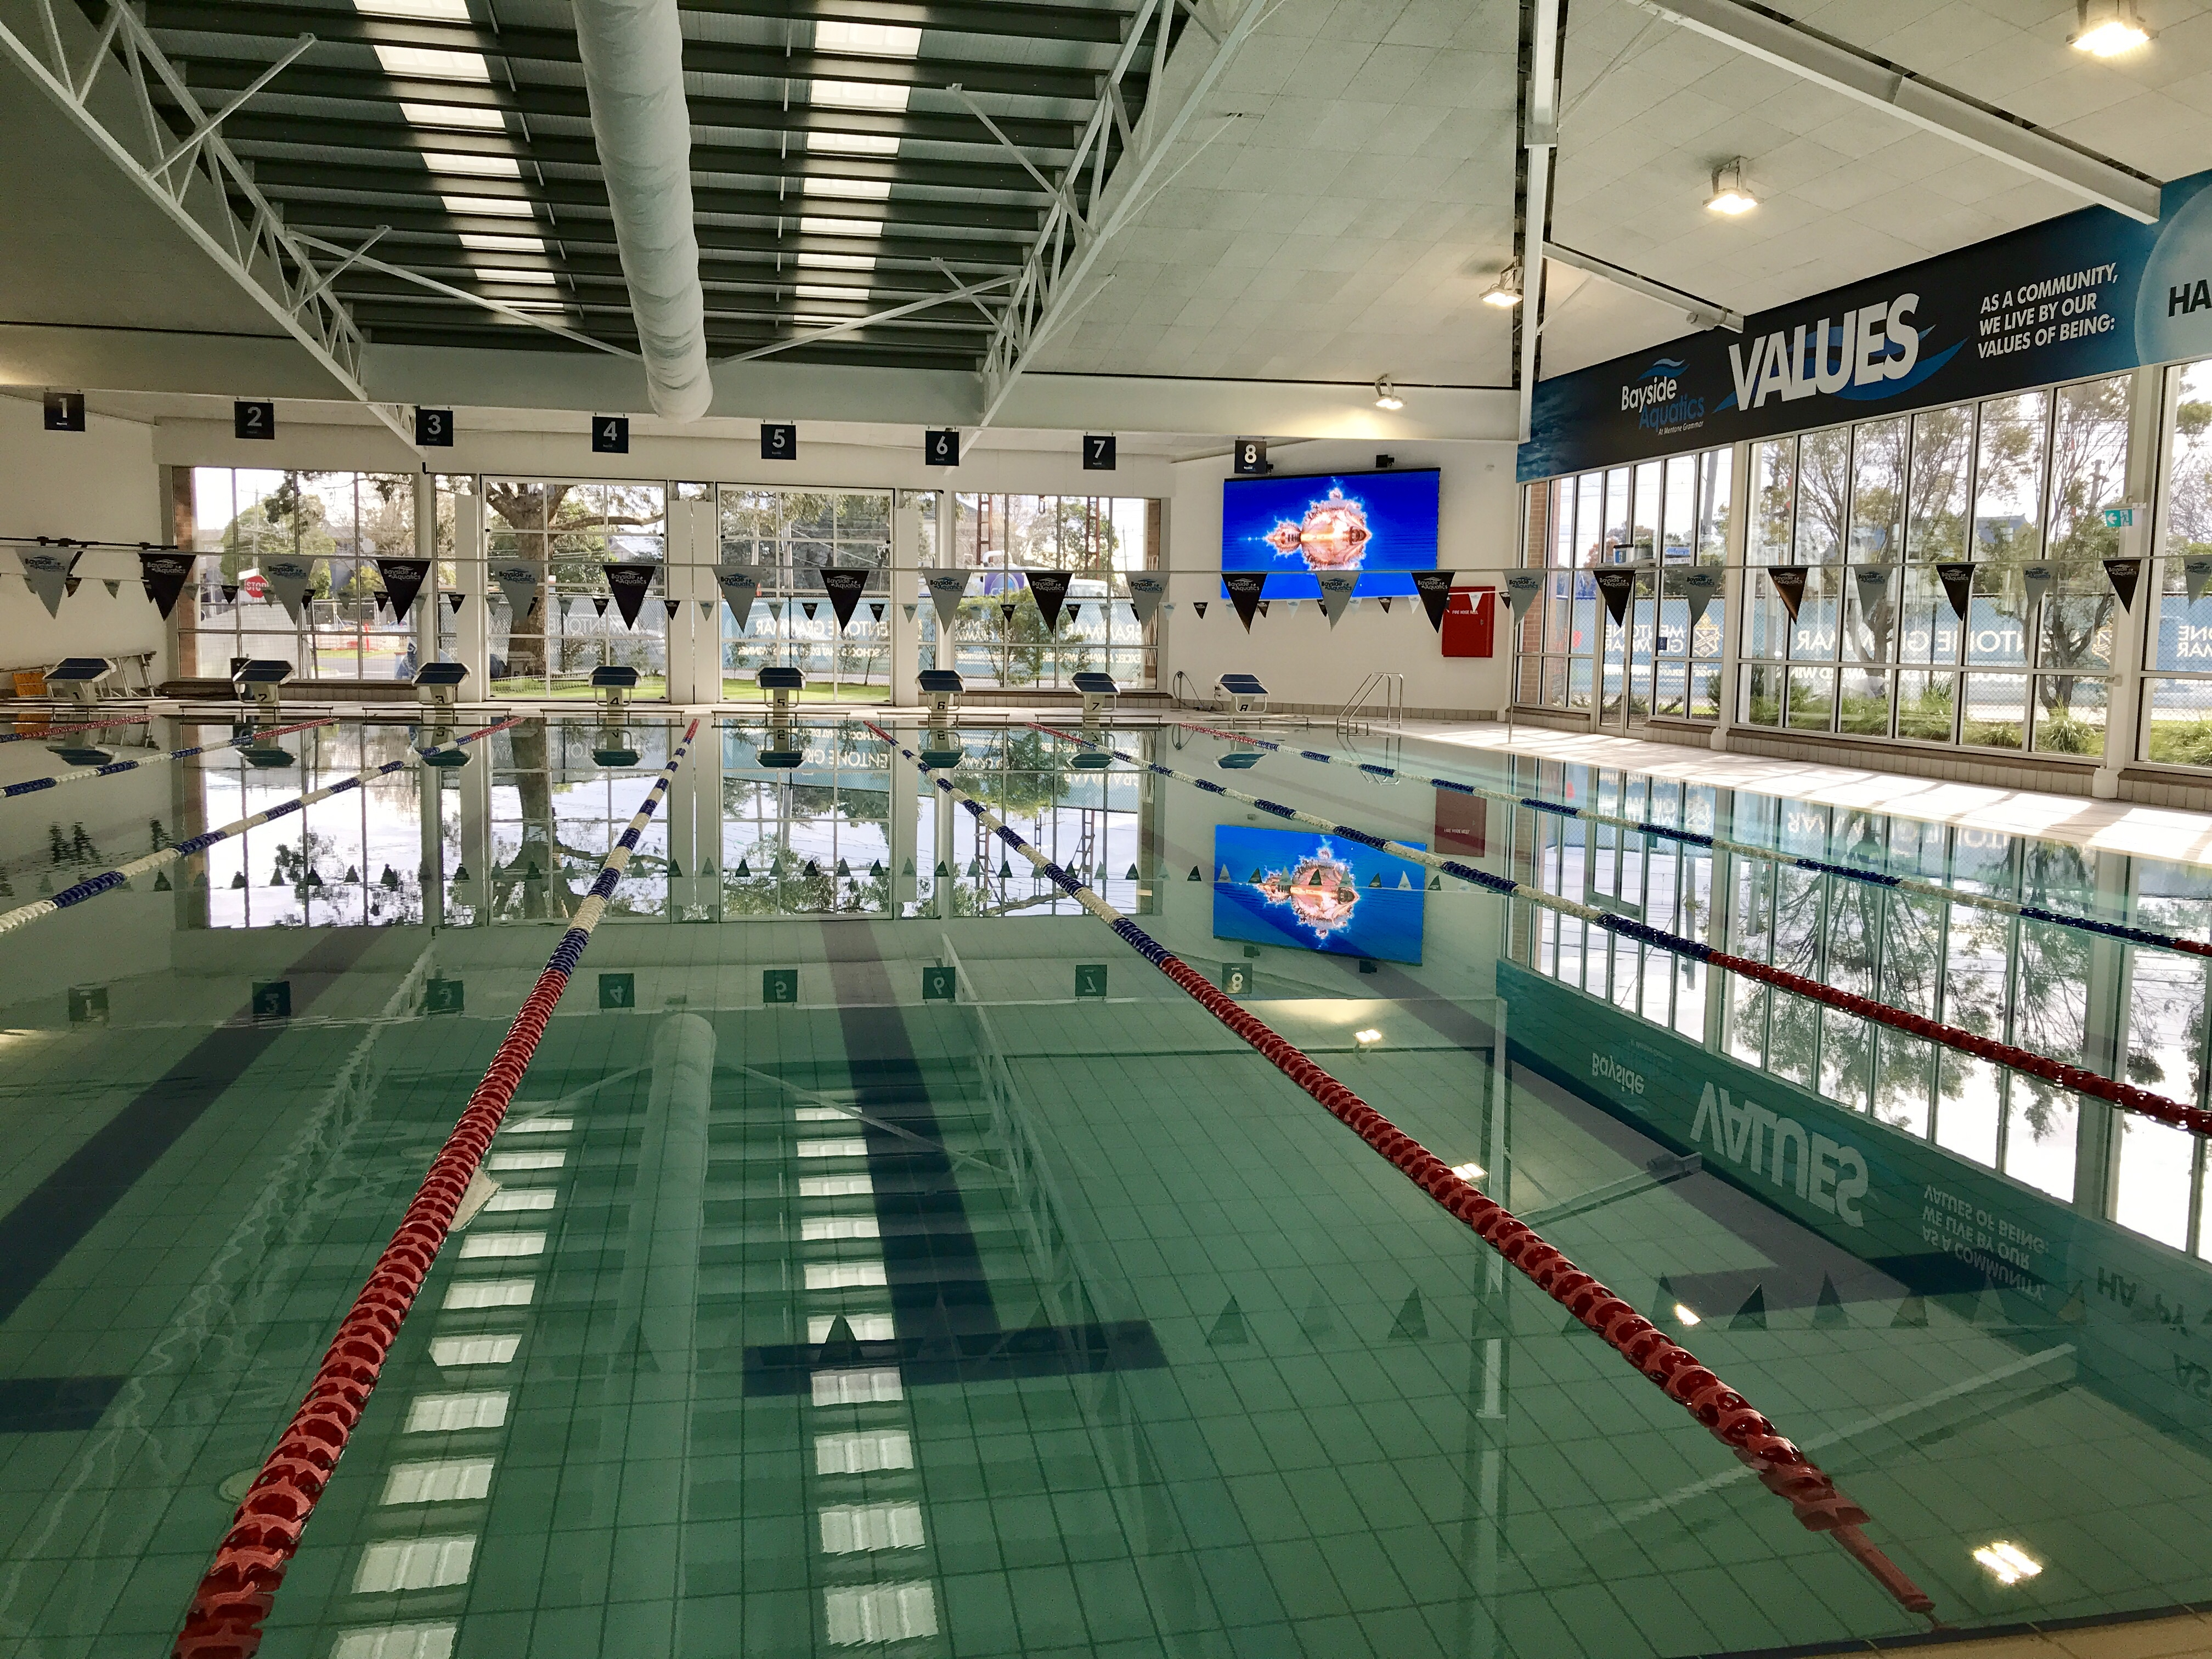 Aquatic center LED pixel wall